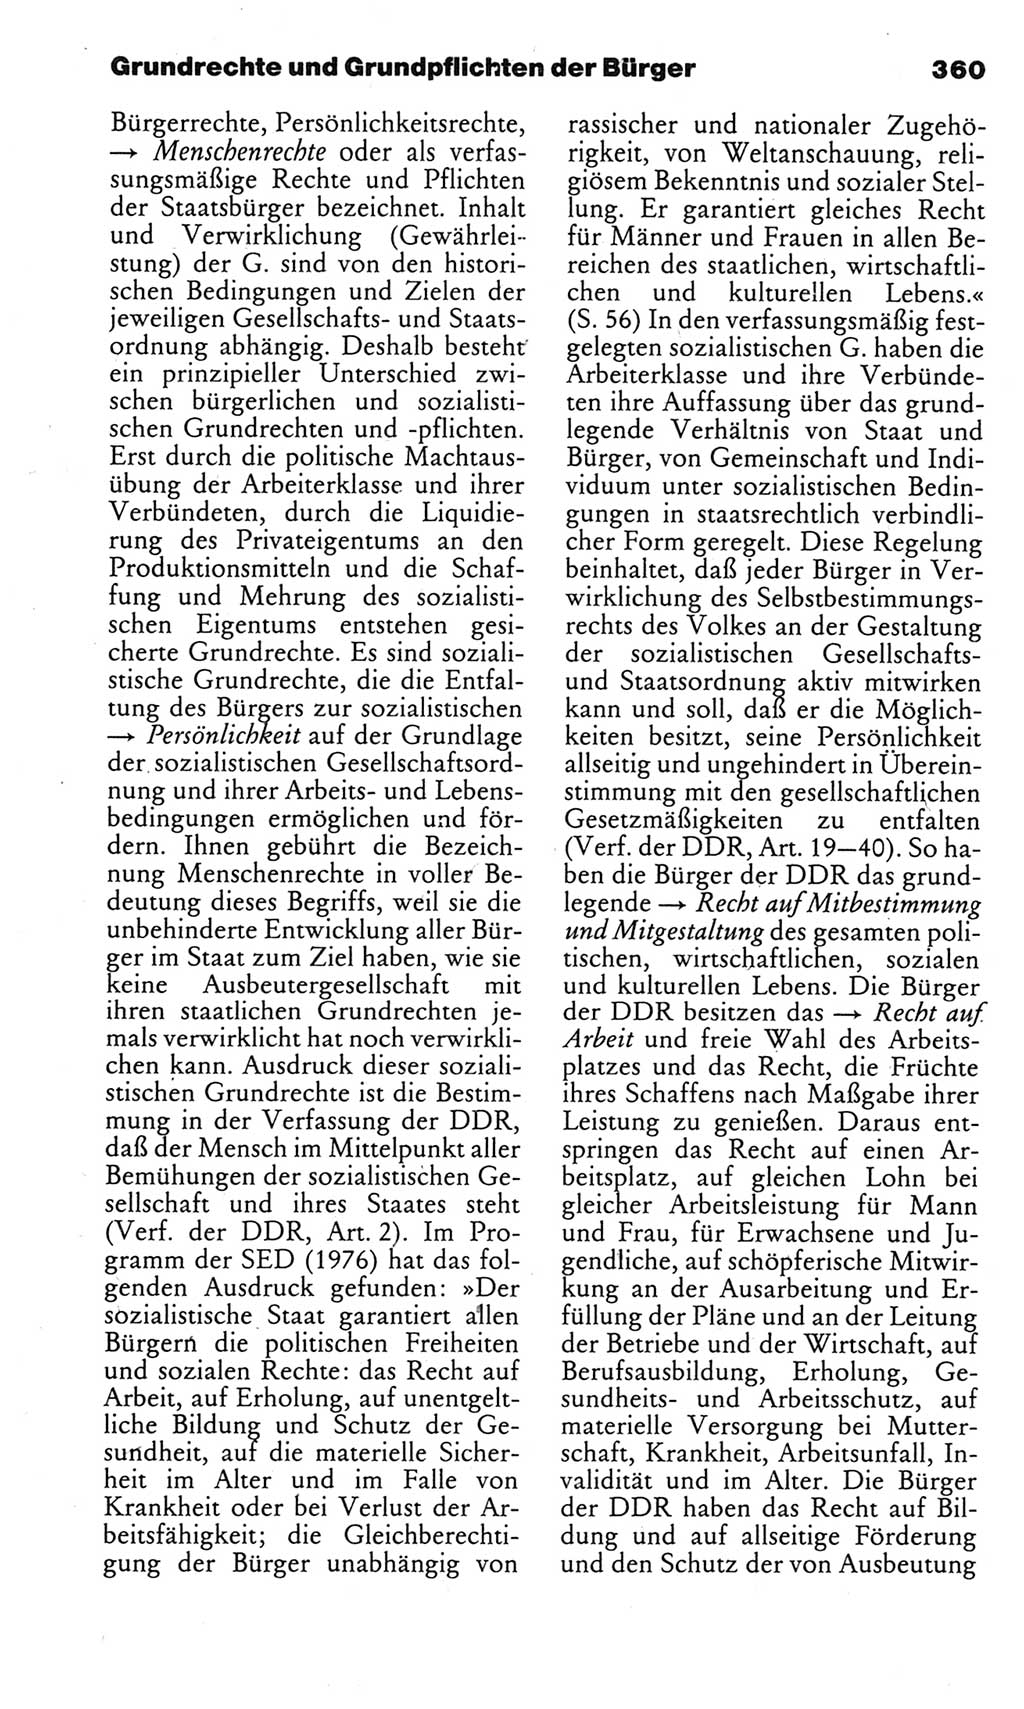 Kleines politisches Wörterbuch [Deutsche Demokratische Republik (DDR)] 1983, Seite 360 (Kl. pol. Wb. DDR 1983, S. 360)